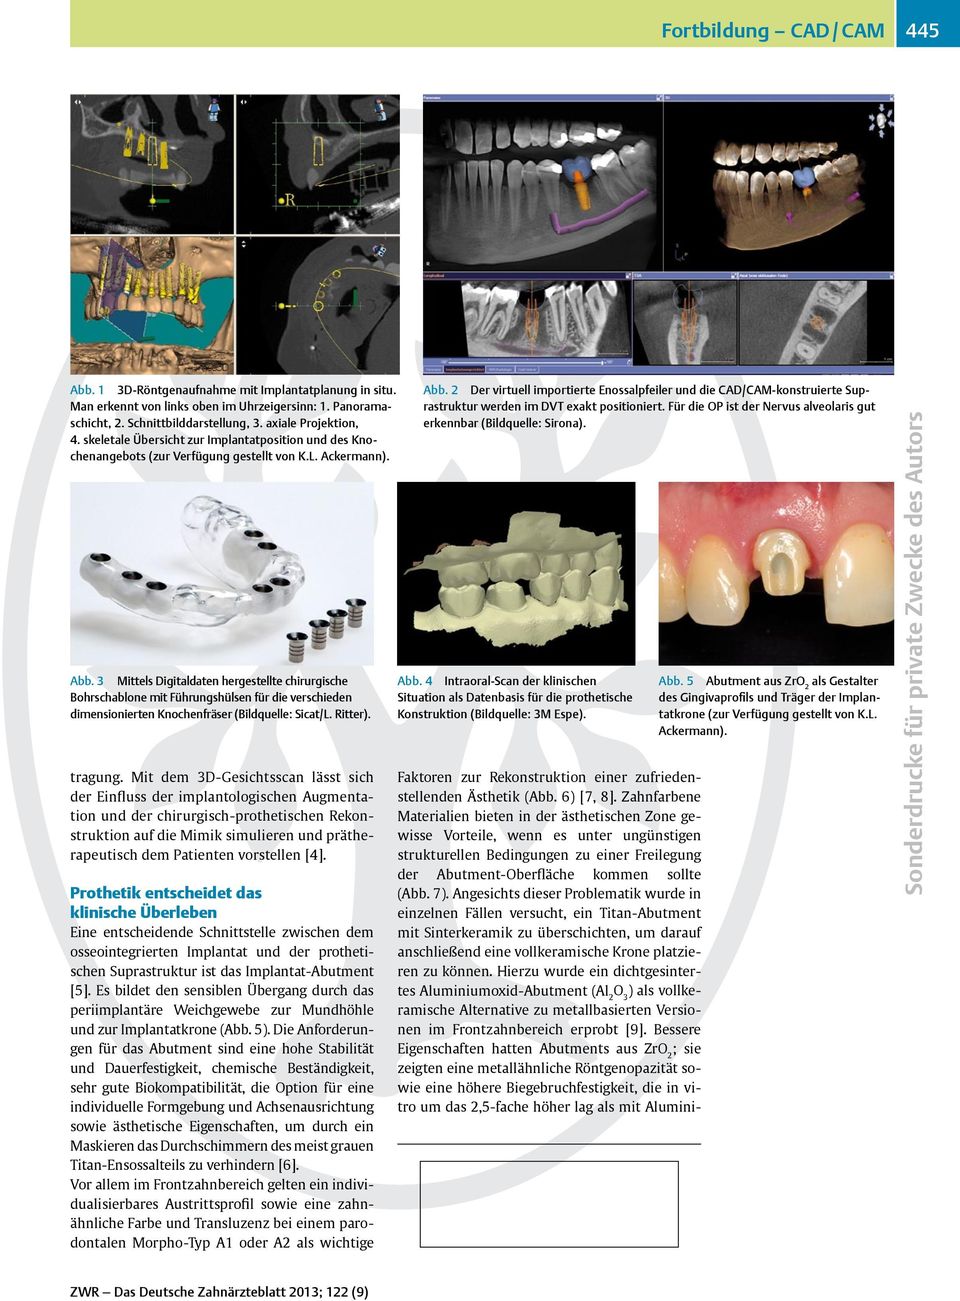 3 Mittels Digitaldaten hergestellte chirurgische Bohrschablone mit Führungshülsen für die verschieden dimensionierten Knochenfräser (Bildquelle: Sicat/L. Ritter). tragung.